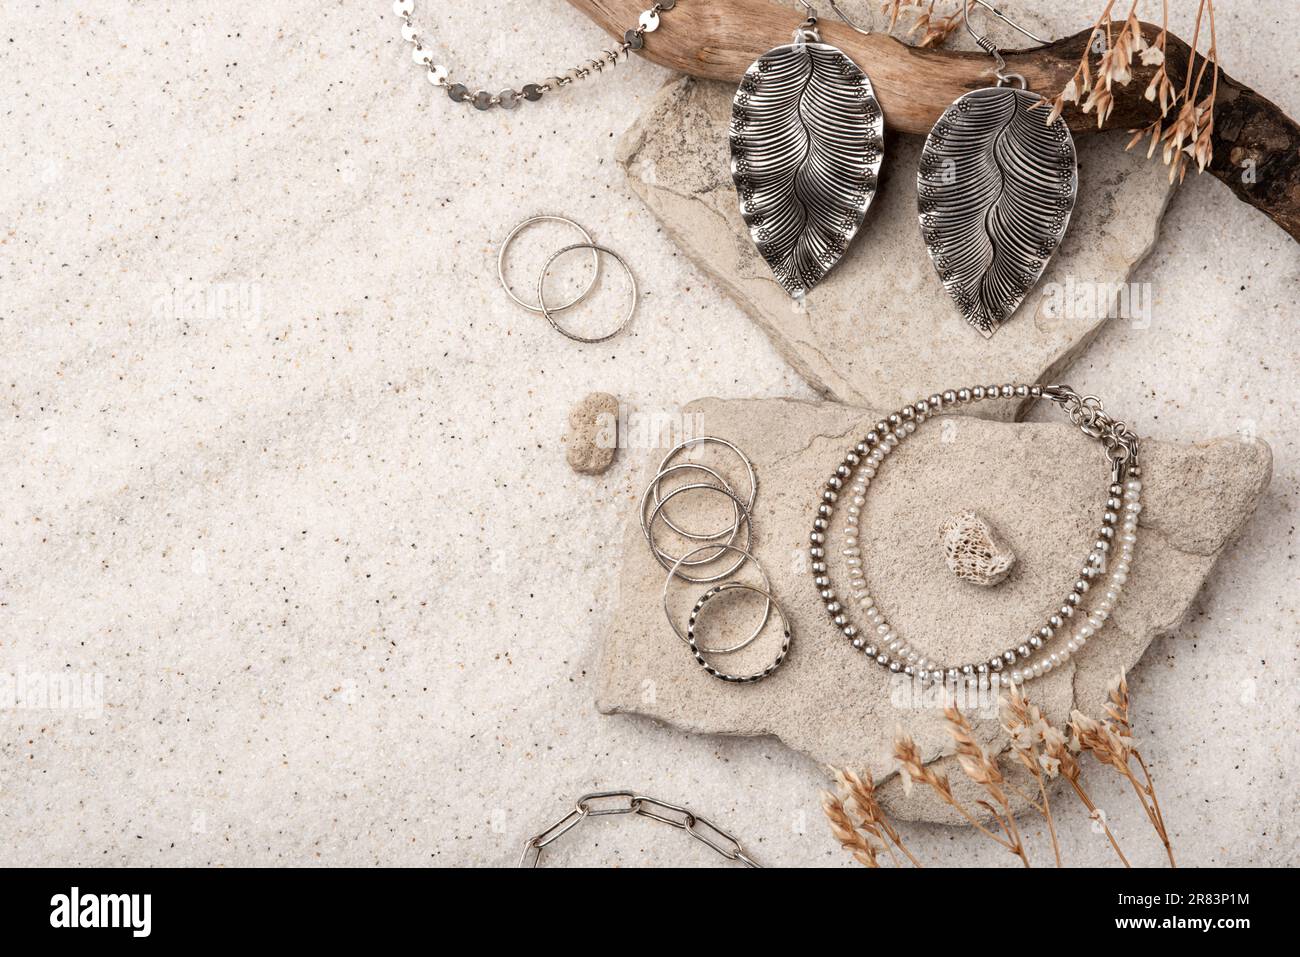 Magnifique bijoux argent et perles sur sable blanc. Différents bijoux -  boucles d'oreilles, bracelets, collier et bagues. Accessoires pour femme  sur un dos naturel Photo Stock - Alamy